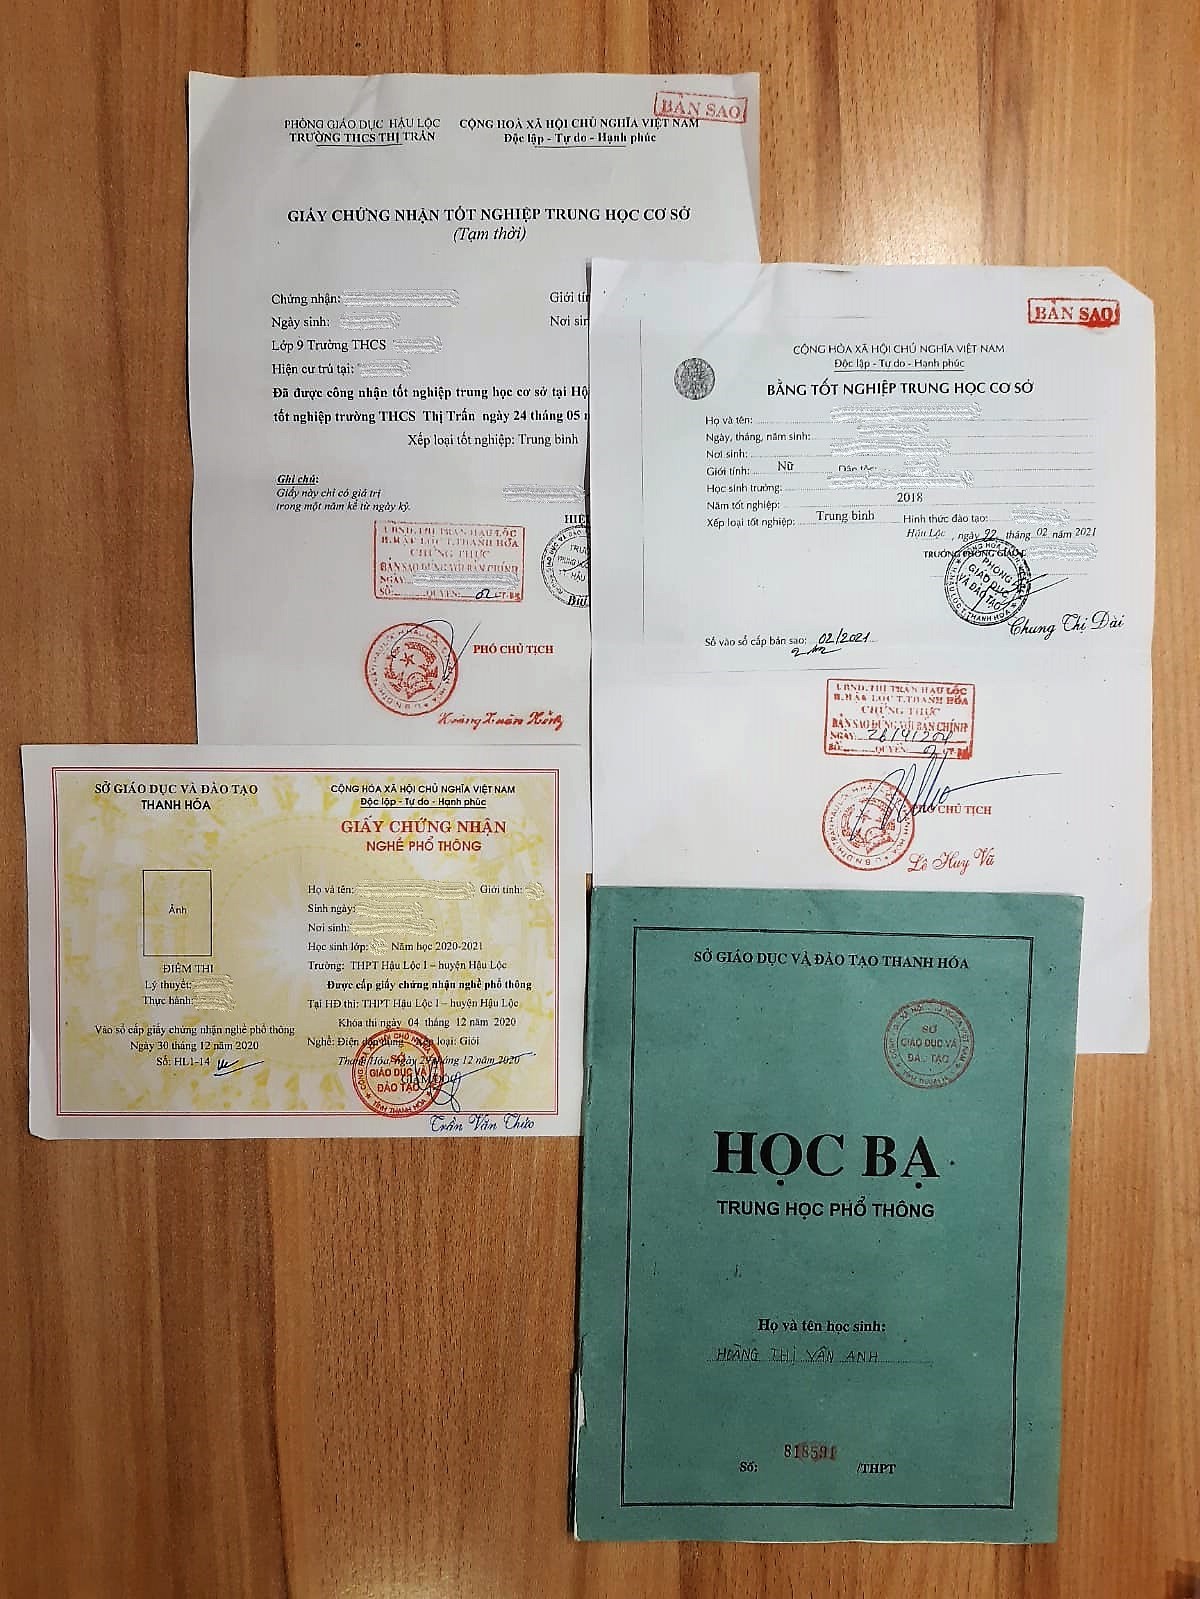 Перевод документов с вьетнамского на русский язык